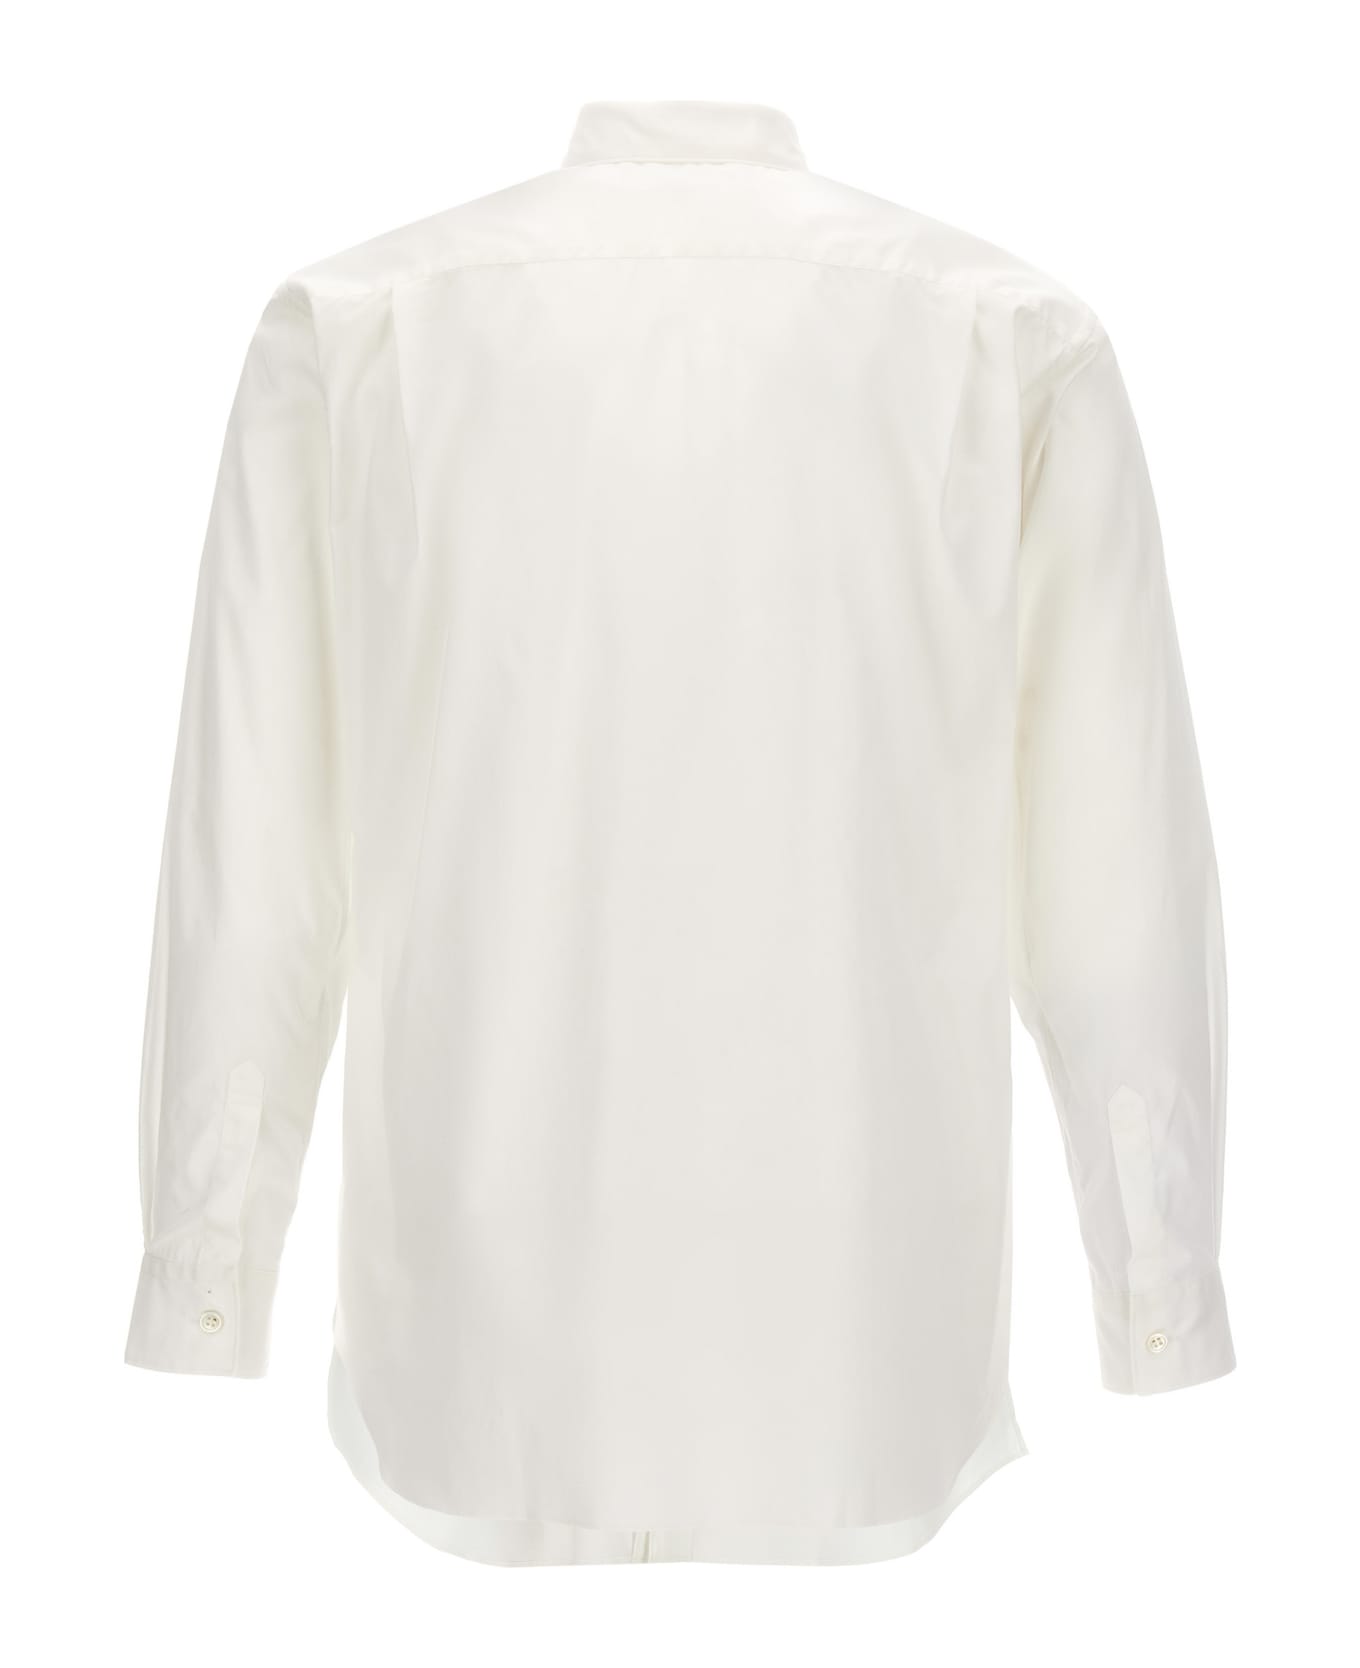 Comme des Garçons Shirt X Lacoste Shirt - White/Black シャツ